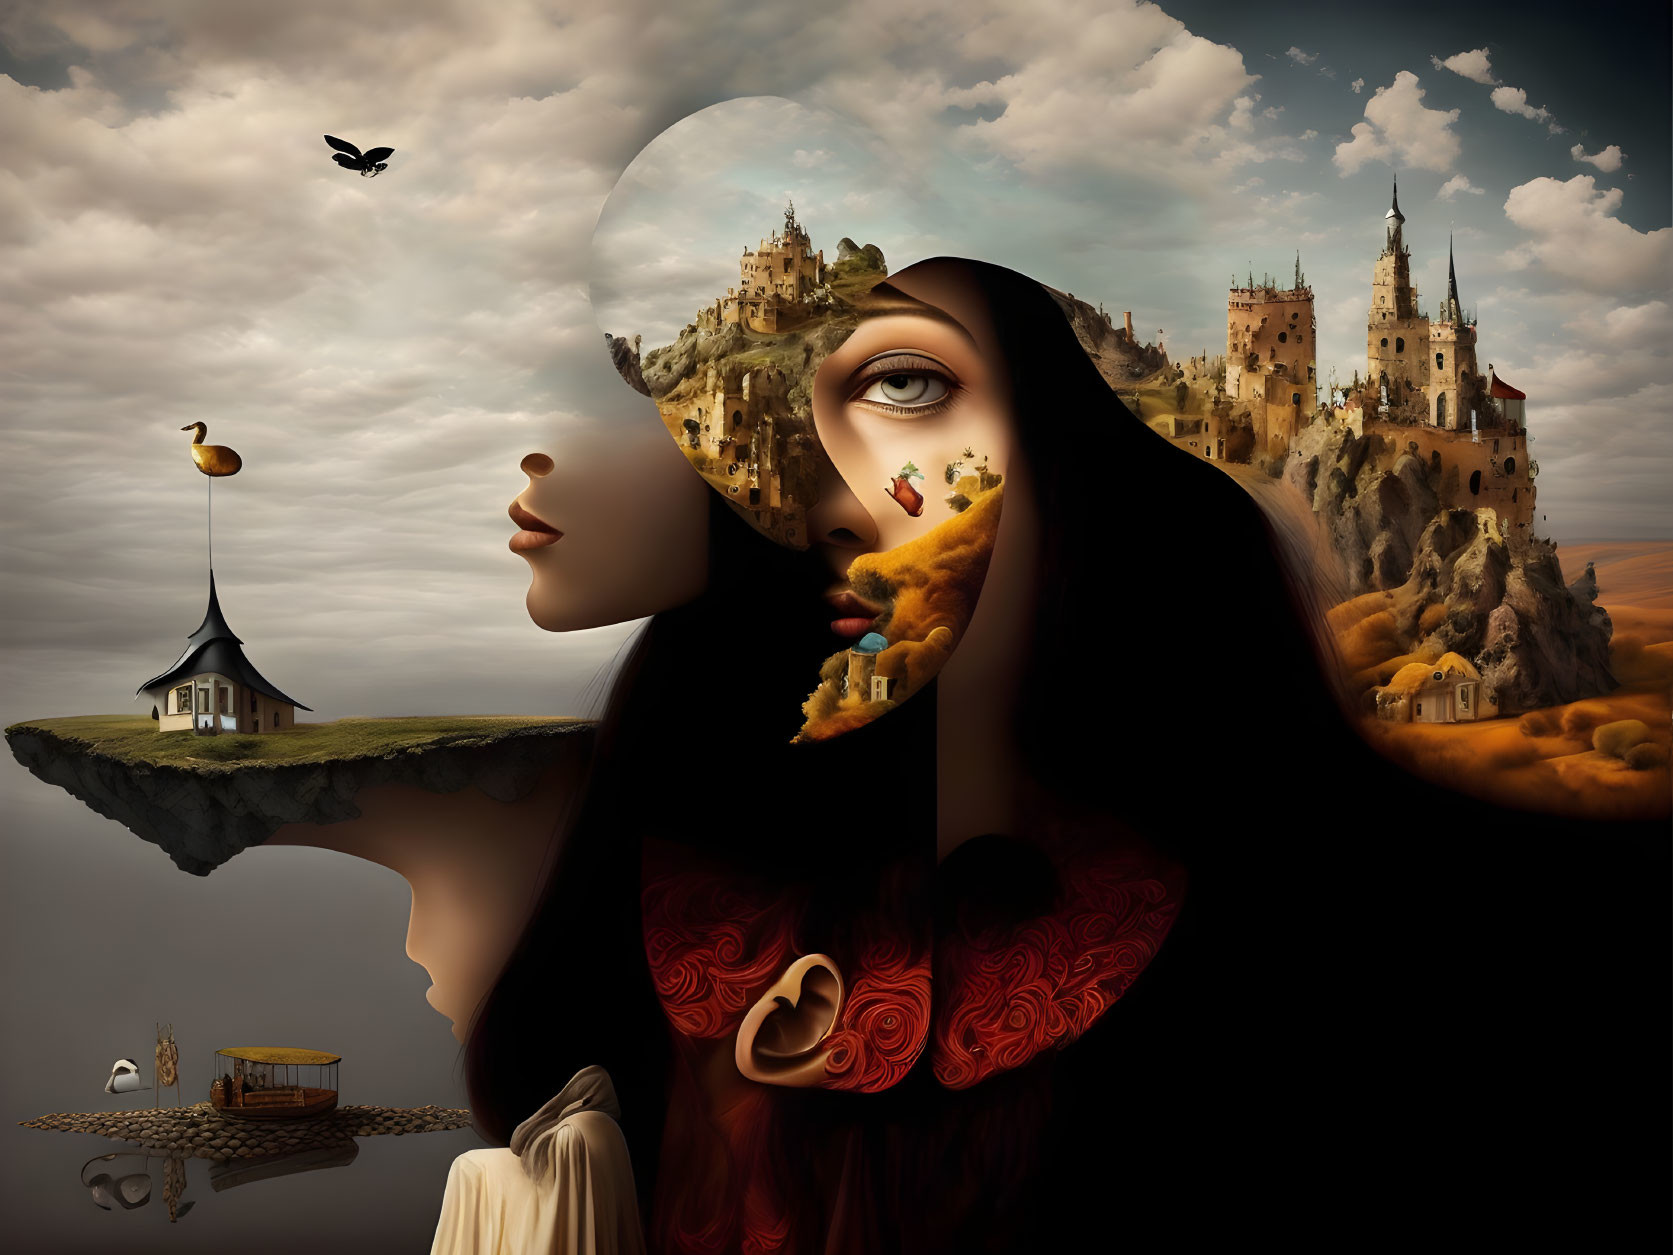 Surreal portrait: woman's face merges with fantastical landscape